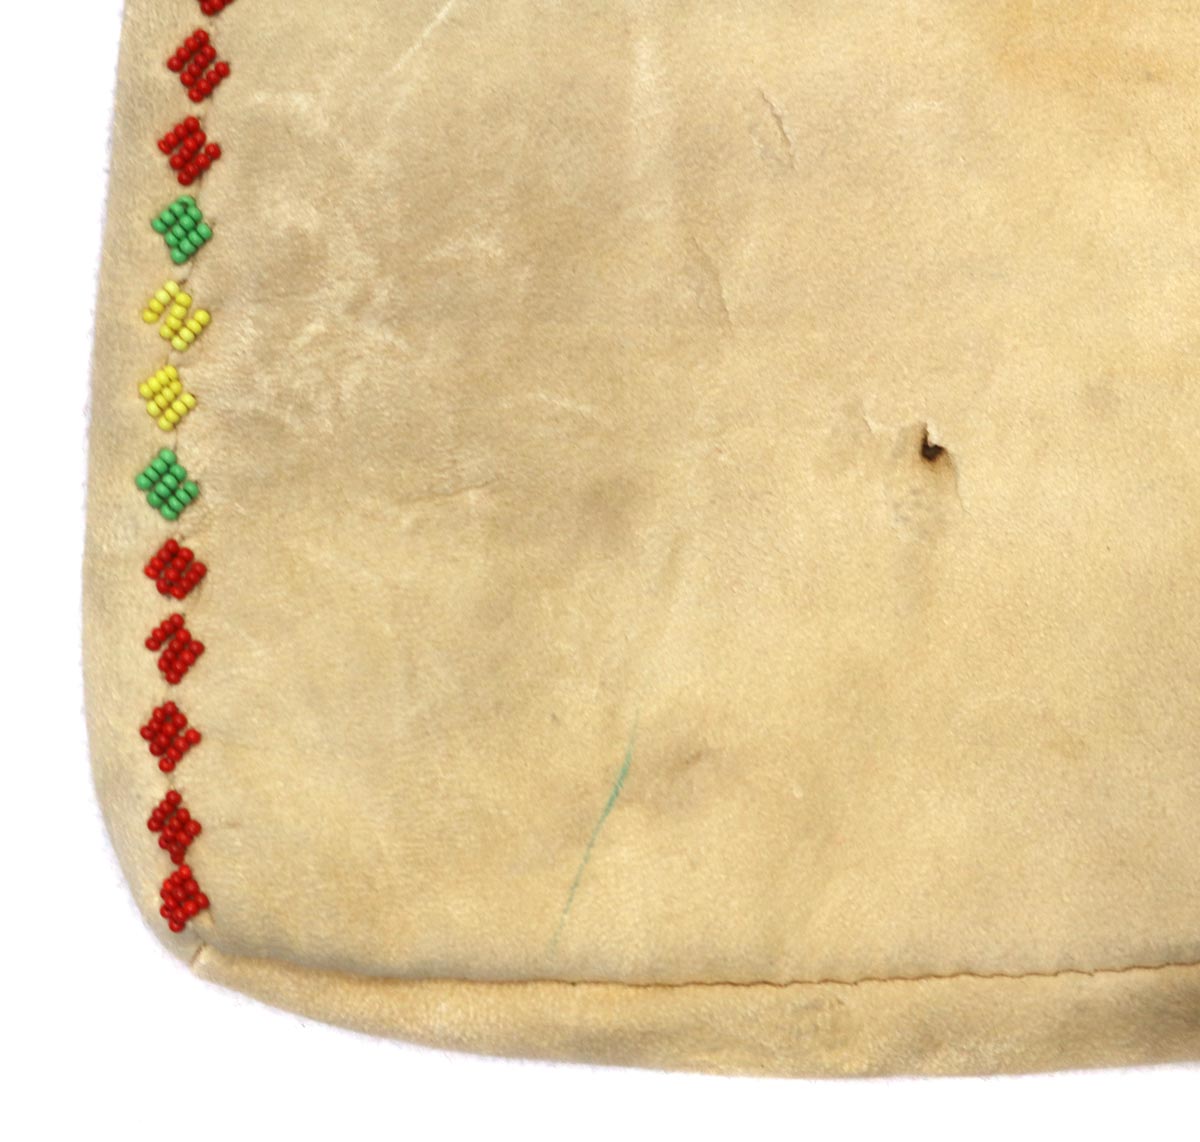 Beaded Leather Bag c. 1910-20s, 13" x 20.5" (DW90225C-0222-001) 3
